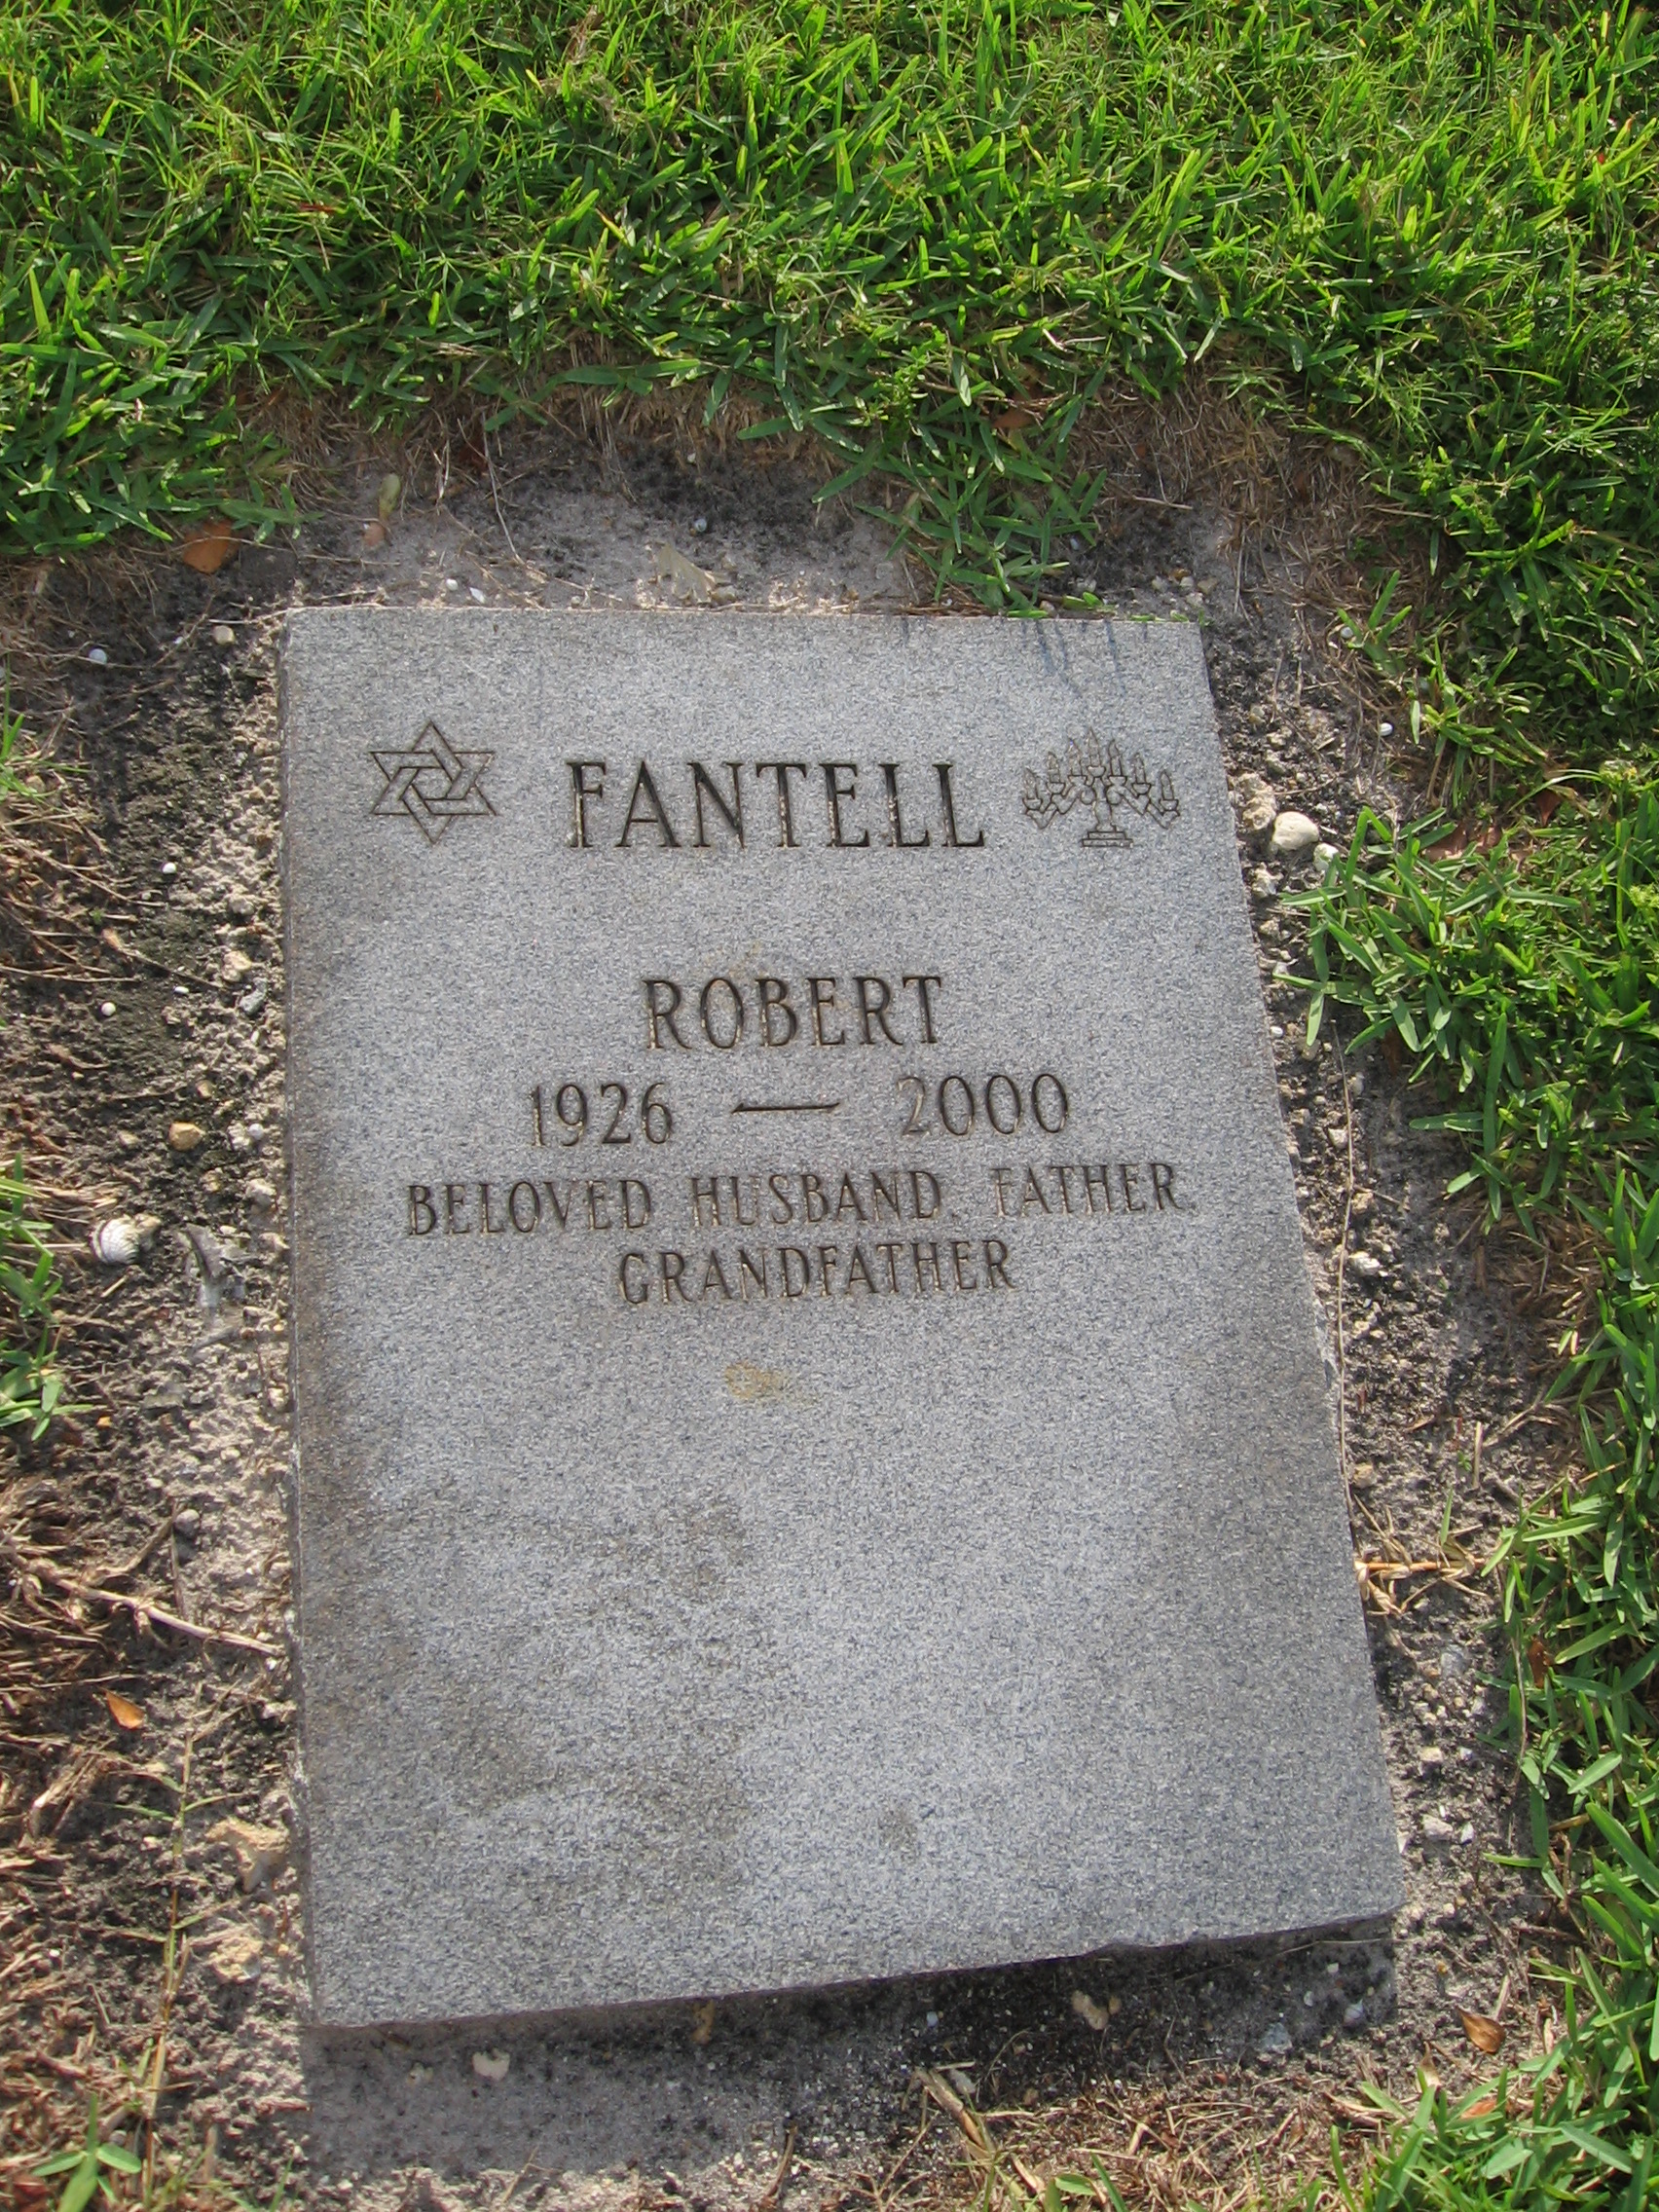 Robert Fantell